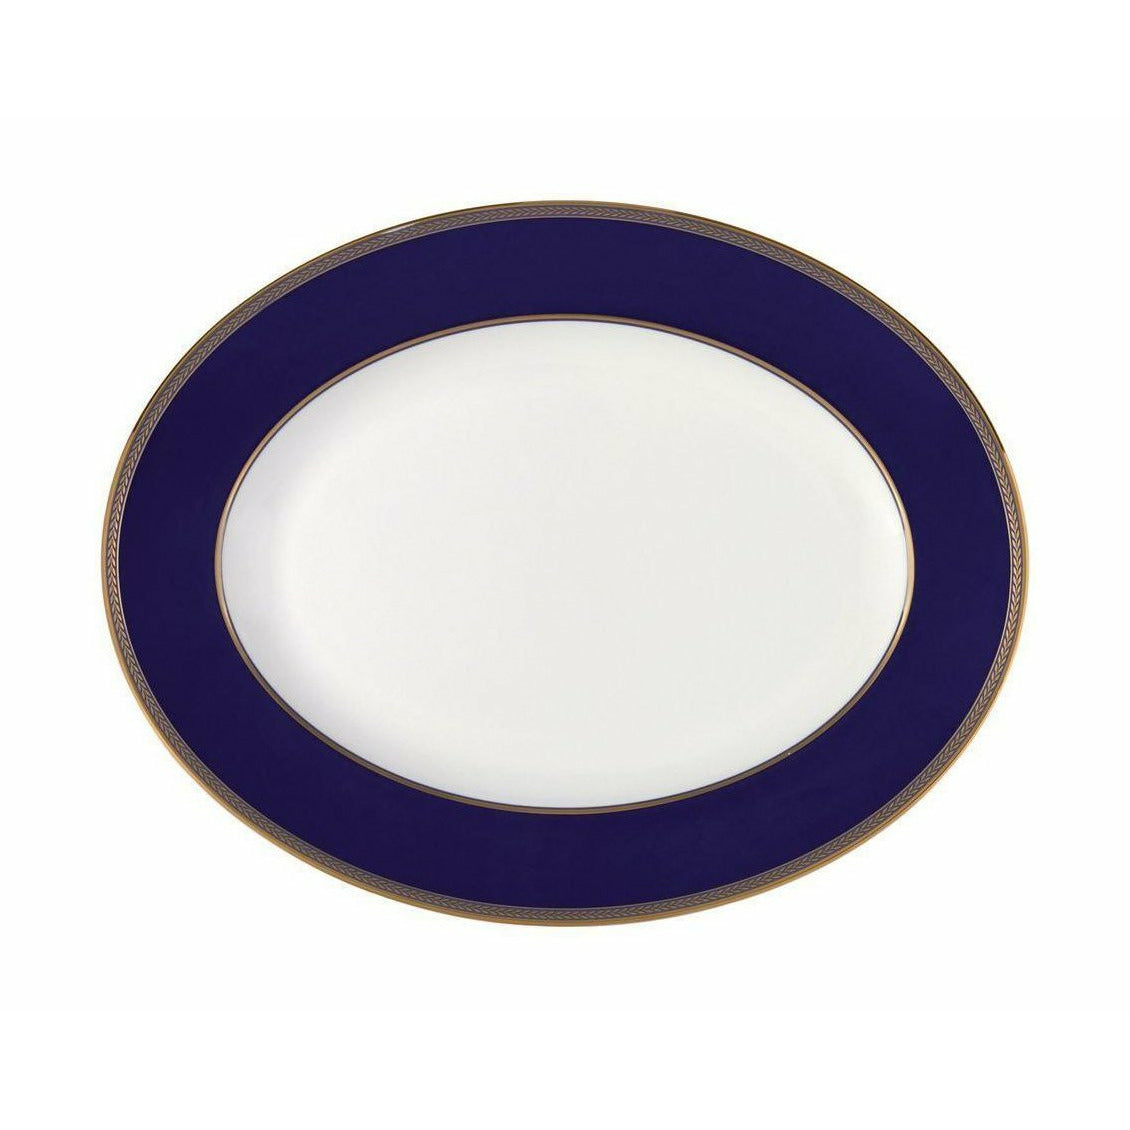 韦格伍德文艺复兴时期金椭圆形碗35厘米，白/蓝色